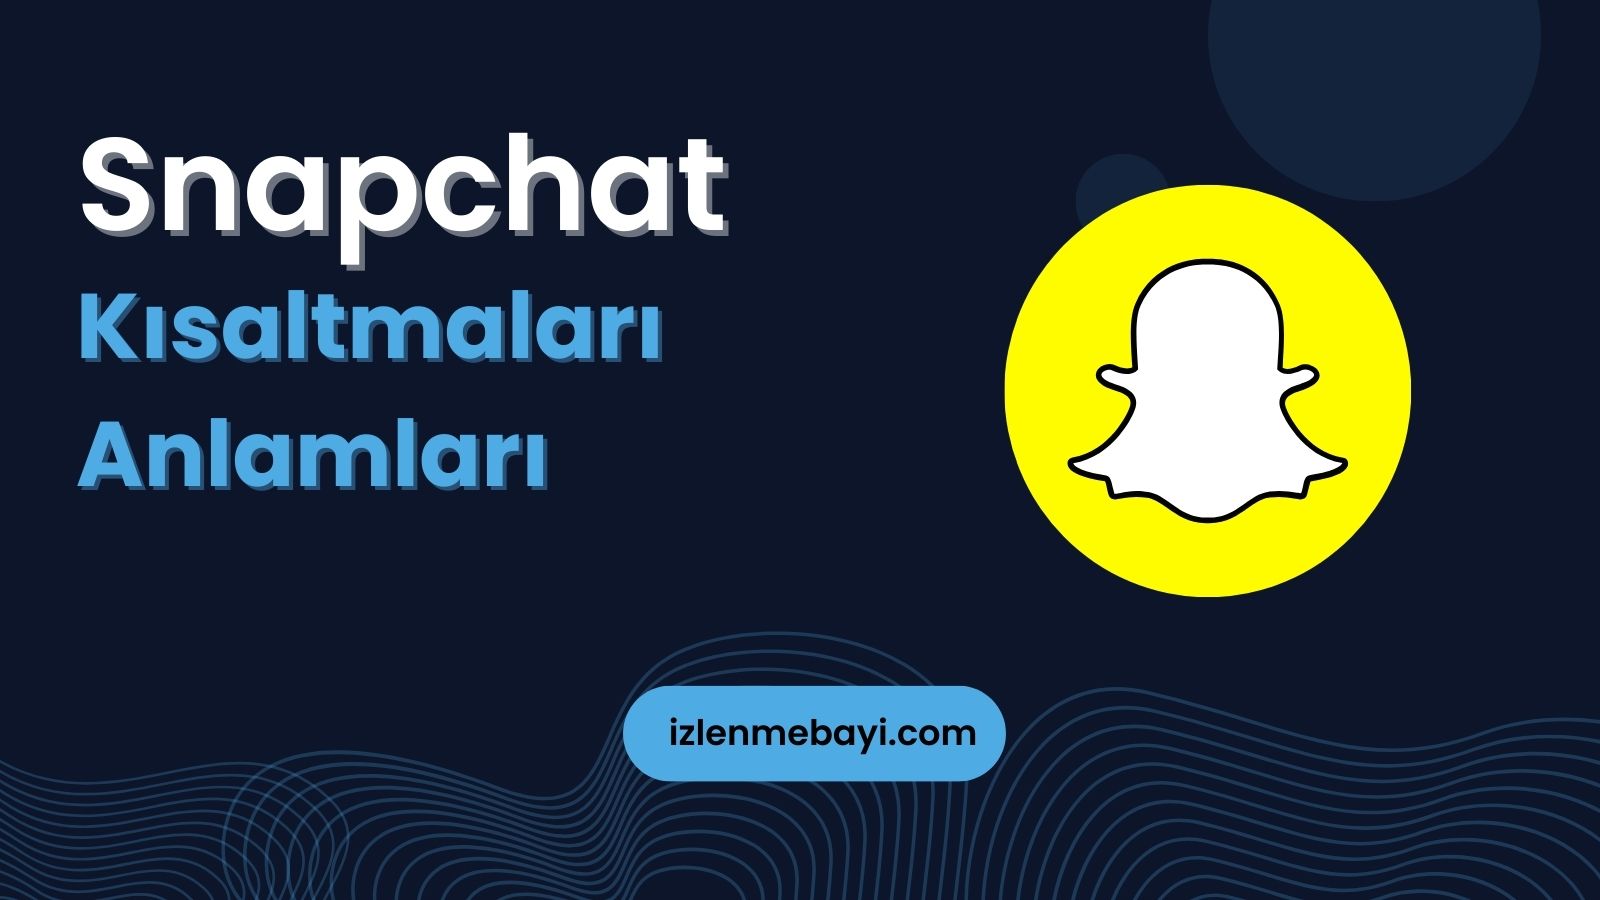 Snapchat Kısaltmaları ve Anlamları | ST, GN, İG Daha Fazlası